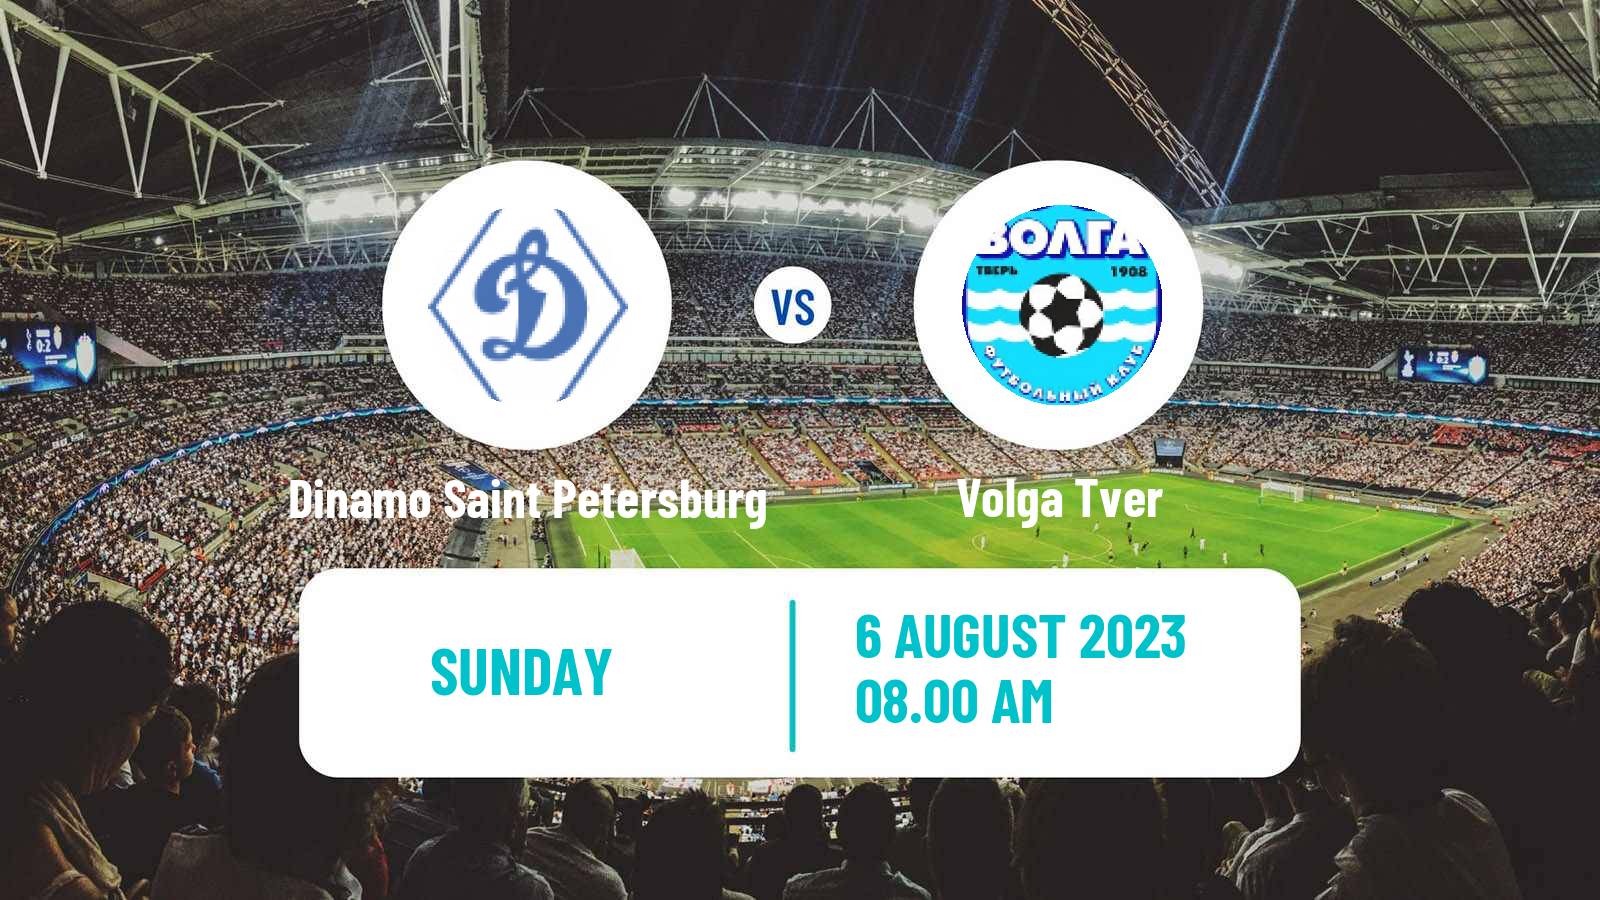 Soccer FNL 2 Division B Group 2 Dinamo Saint Petersburg - Volga Tver